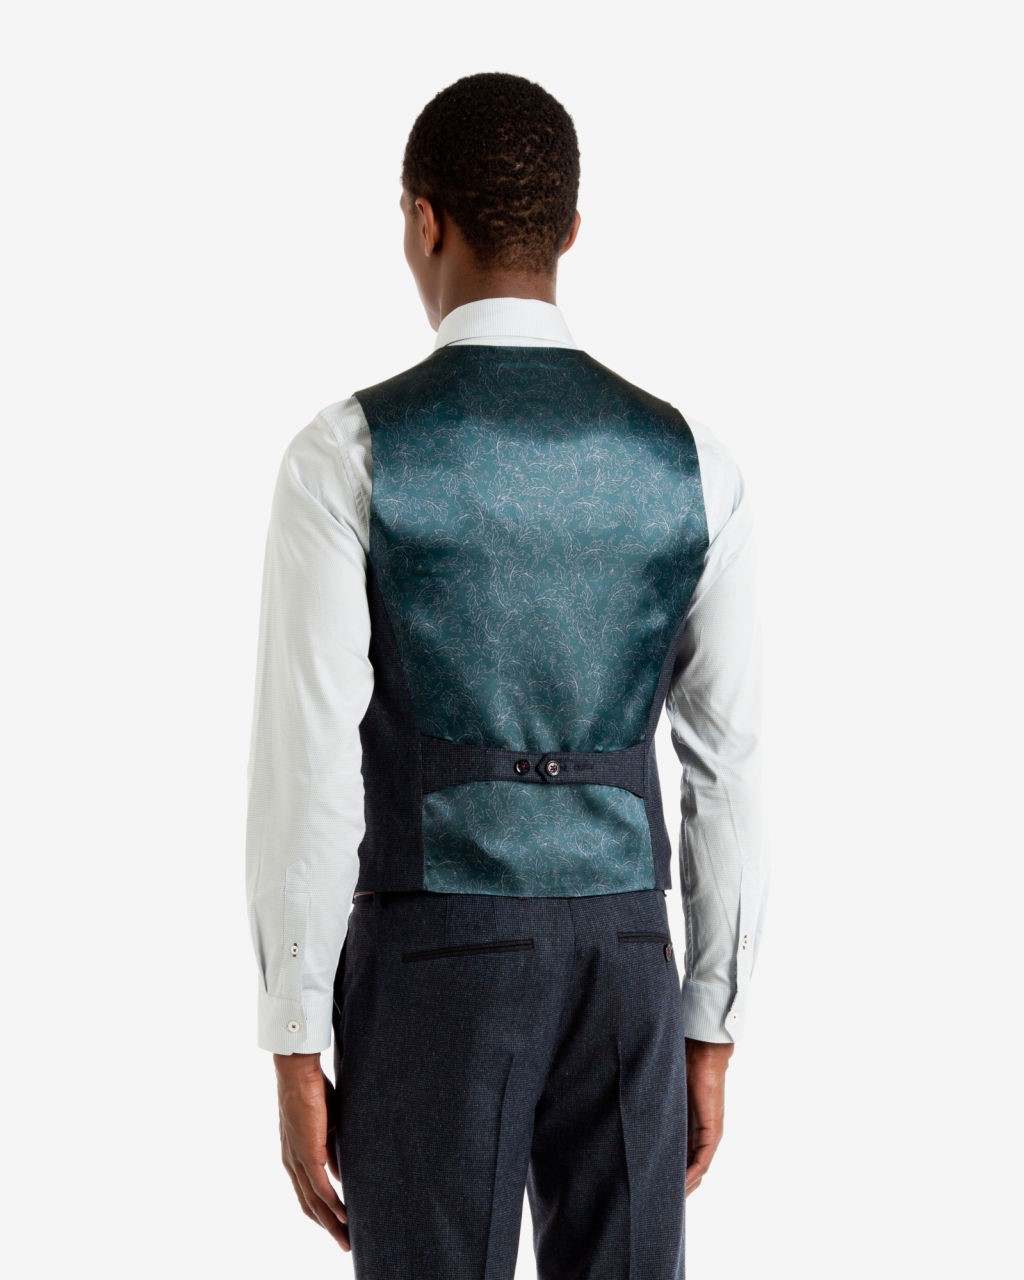 Edewai Mini Design wool waistcoat, £120